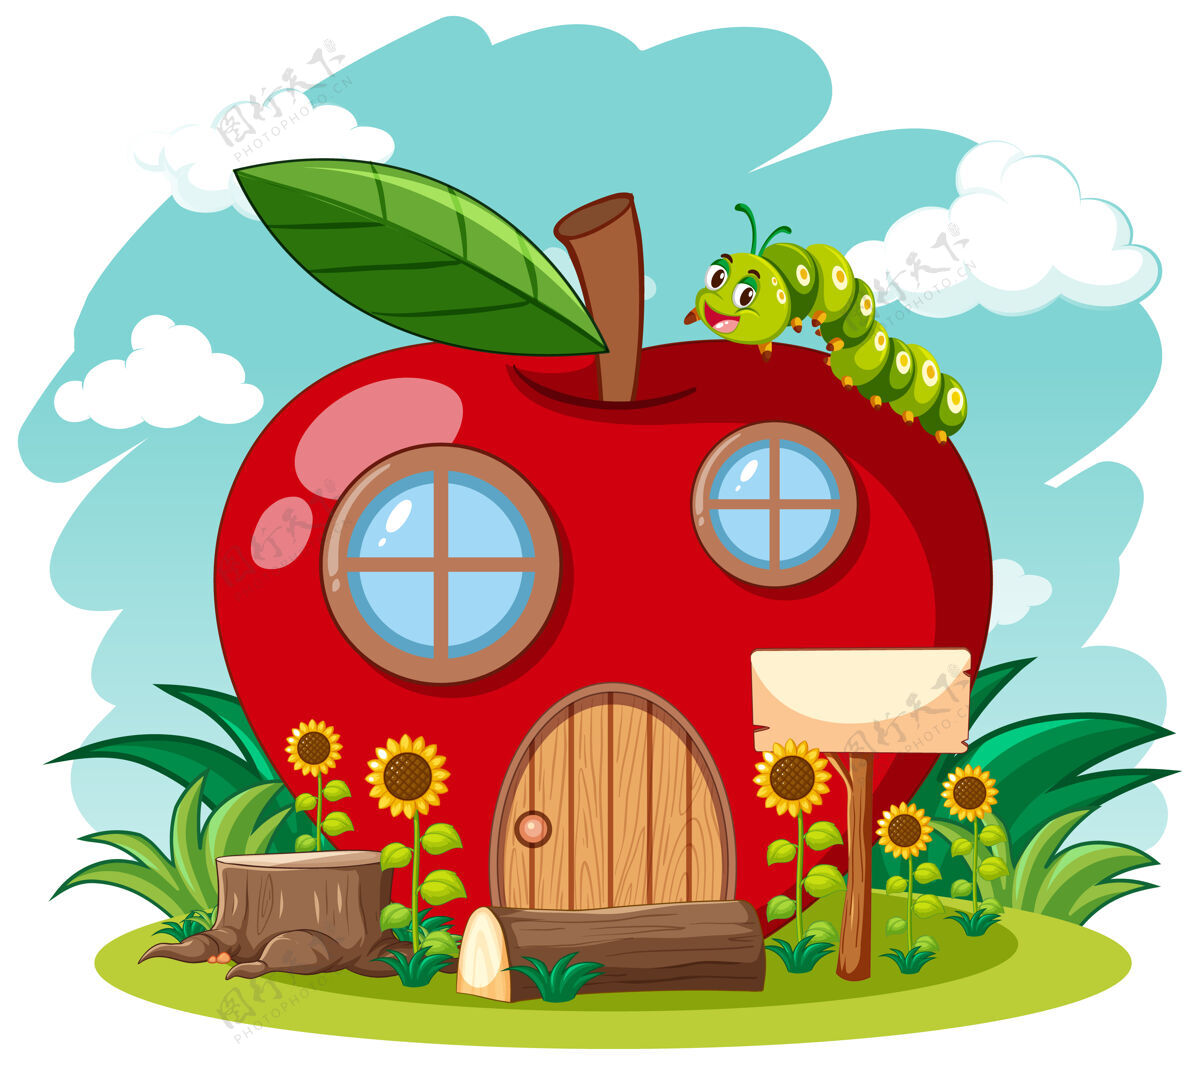 蘑菇红色的苹果屋和可爱的蠕虫在花园卡通风格的天空背景装饰木材水果